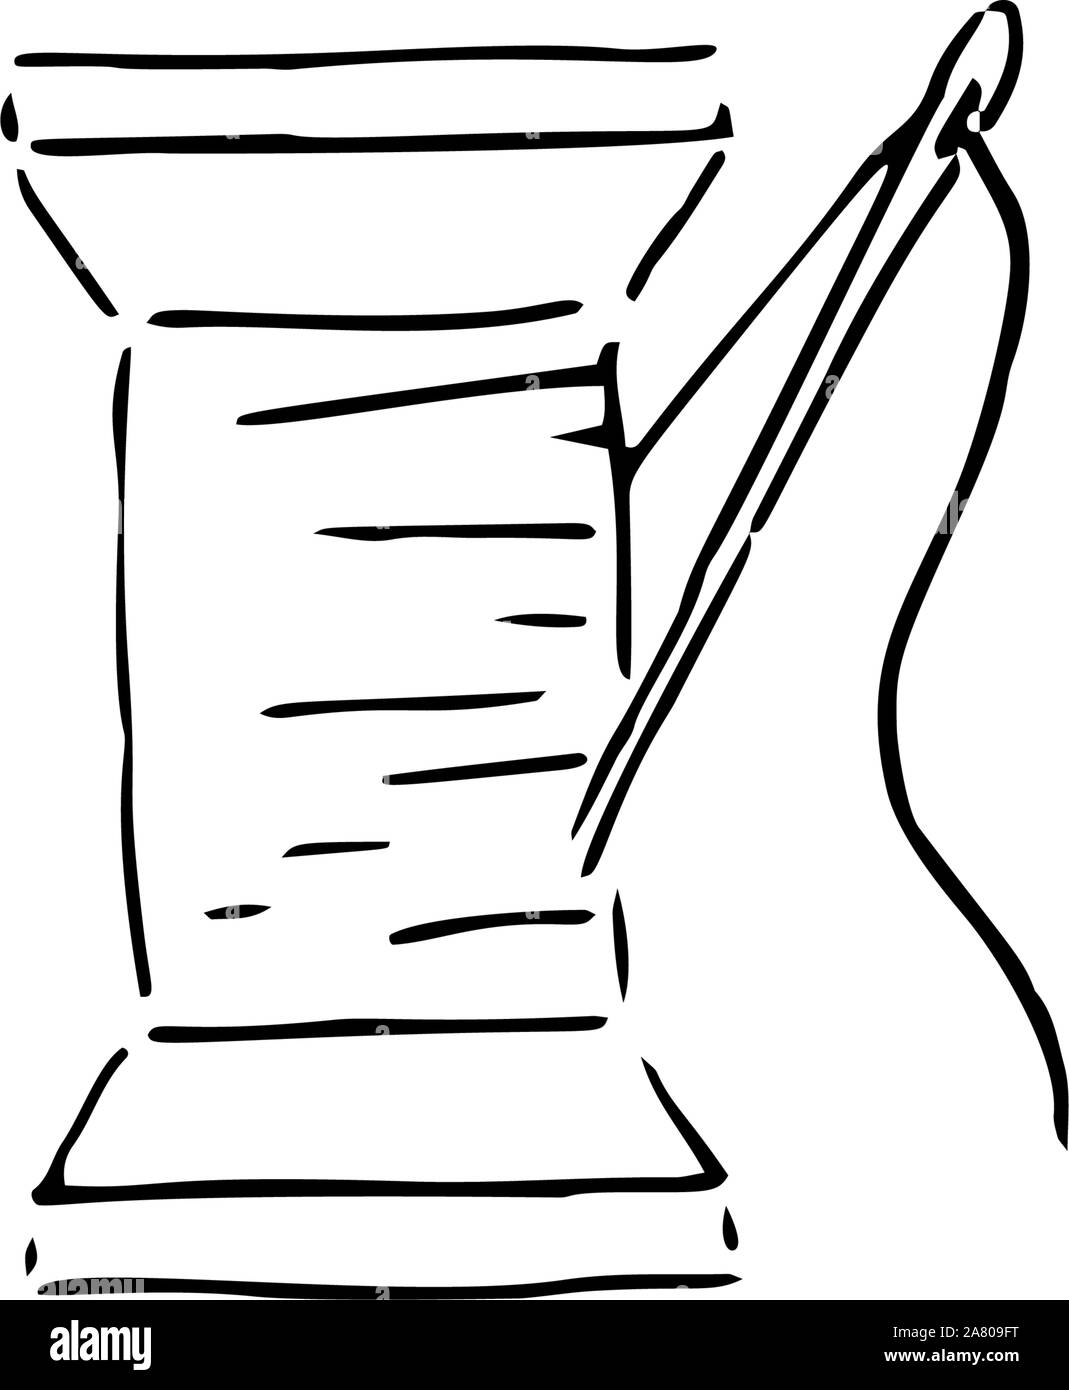 Nähgarnitur vorhanden. Fingerhut, Nadel, Faden, Spule, Schere.  Schwarz-Weiß-Illustration Stock-Vektorgrafik von ©loveless_liza.mail.ru  107041048